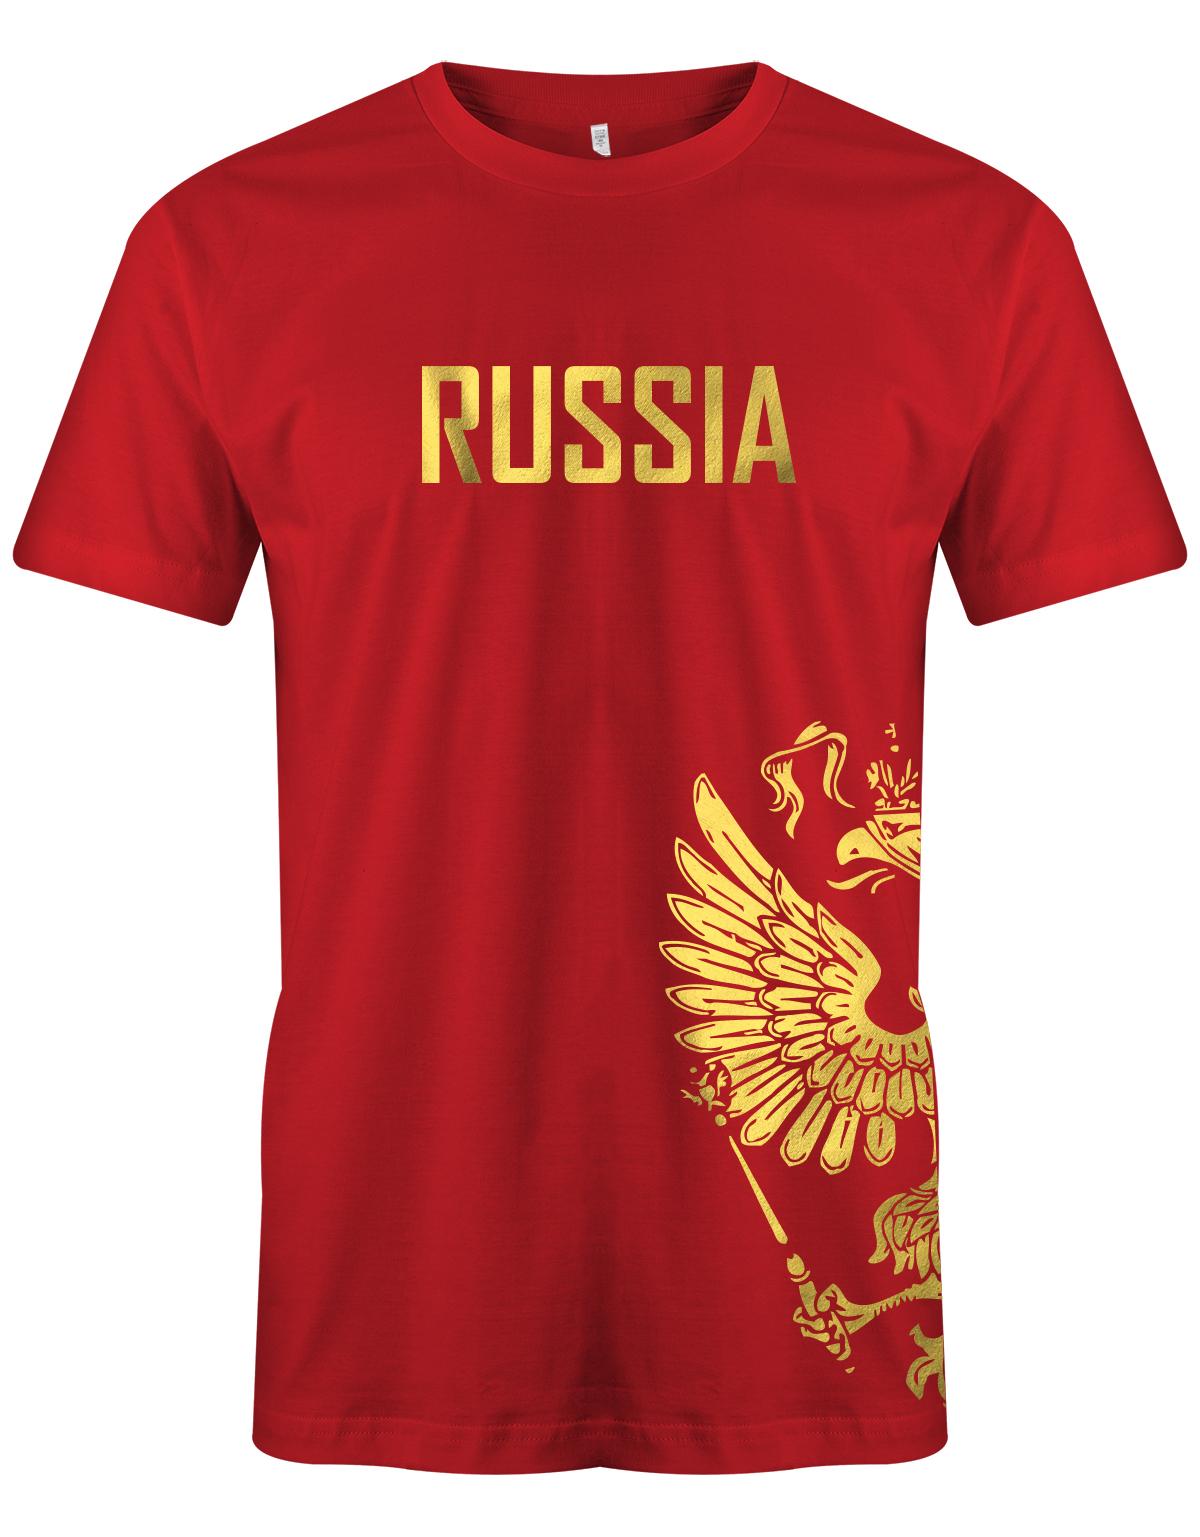 Russia-Adler-Herren-Rot